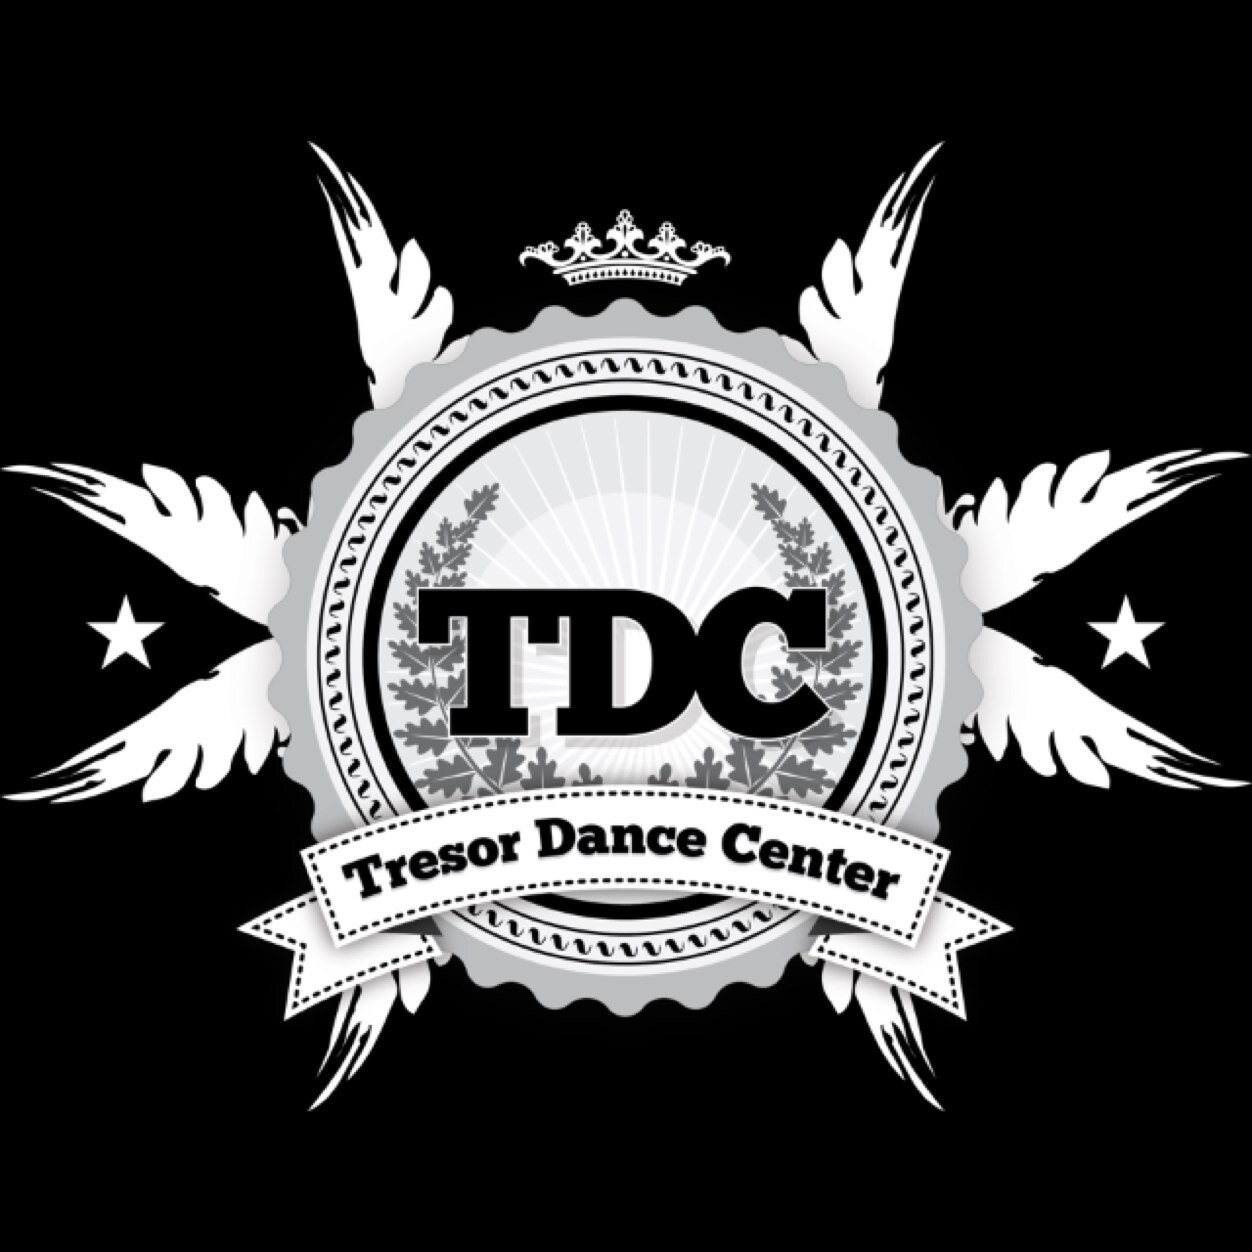 Tresor dance Centre dansschool in Hoogeveen beukemaplein 66 hiphop,popping/locking,breakdance,house,female! voor Info of contact: tdcdancecentre@hotmail.com